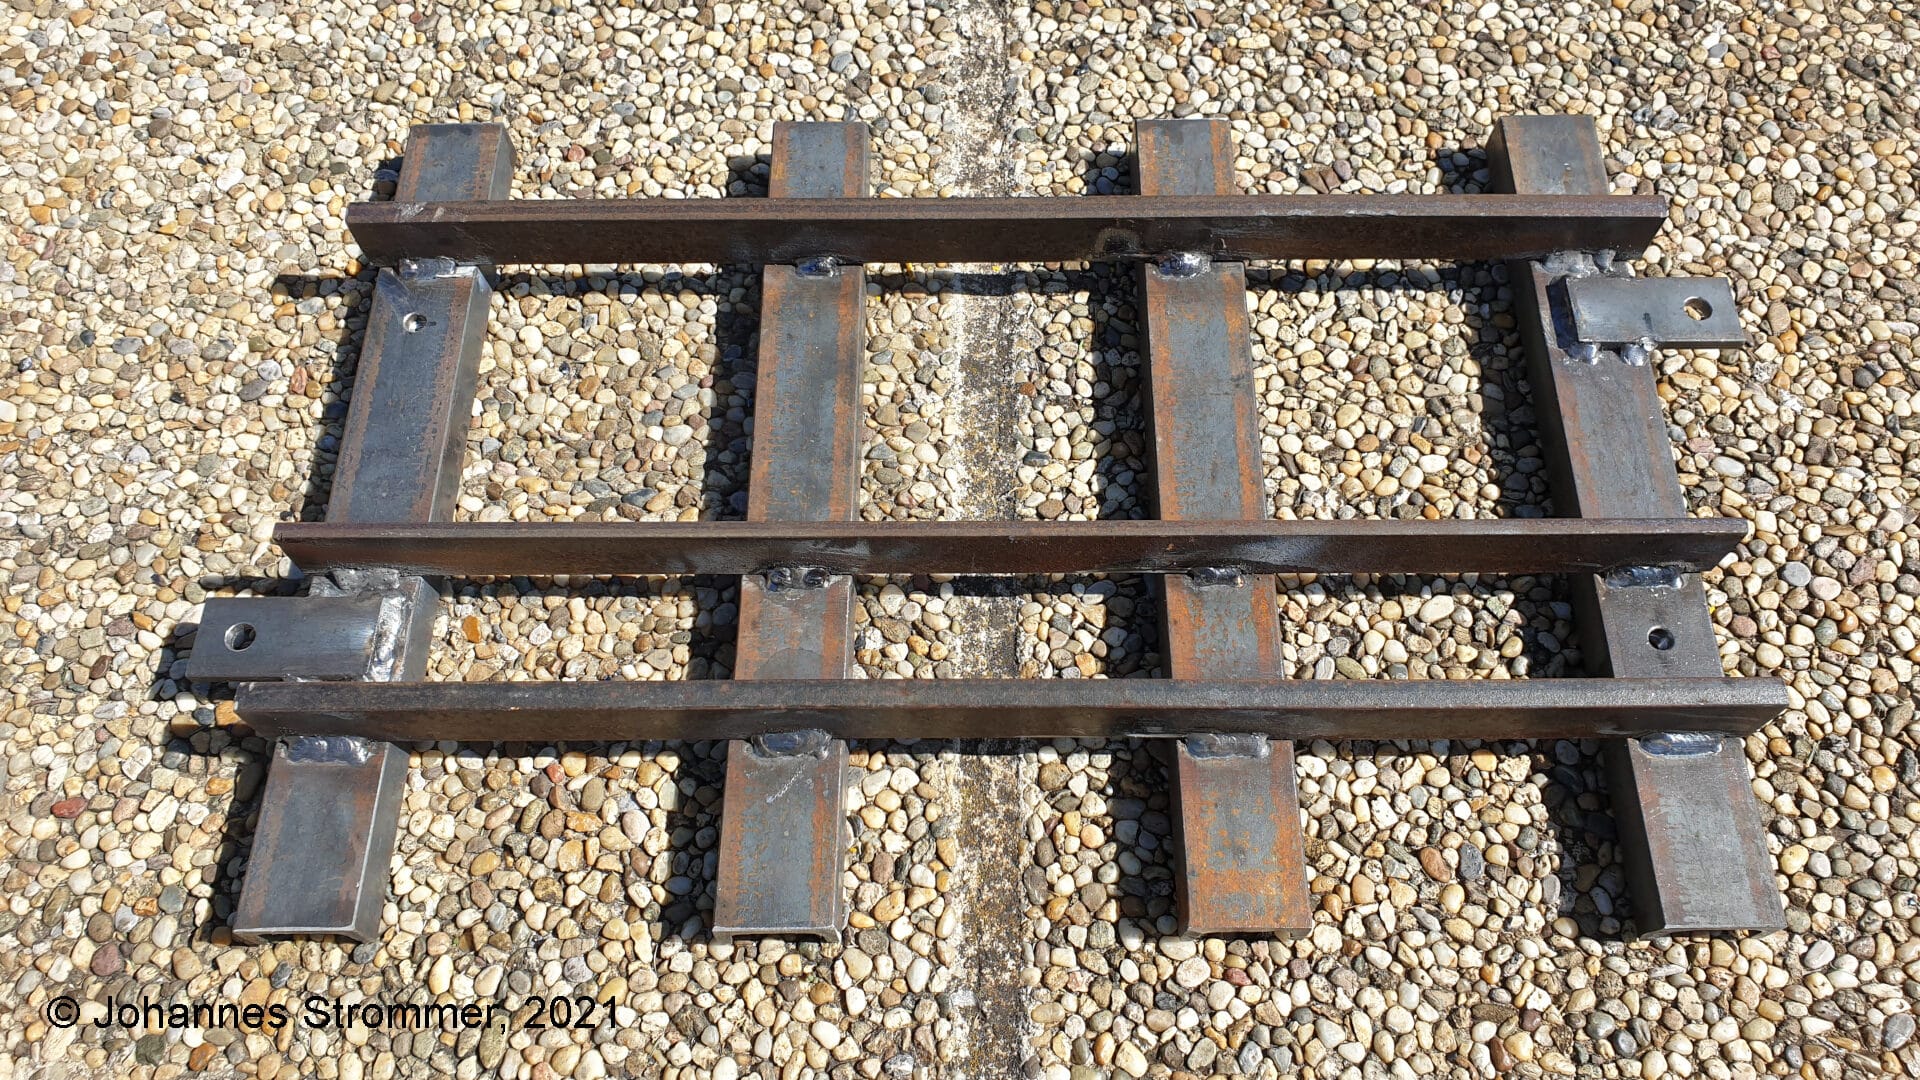 Dreischienengleis für die Spurweiten 127 mm (5 Zoll) und 184 mm (7 ¼ Zoll). Die Schienen bestehen aus einem Flachstahl 30 x 10 (7,25 Zoll) bzw. 30 x 6 (5 Zoll) und die Schwellen aus einem U-Stahl 40 x 20 x 5.